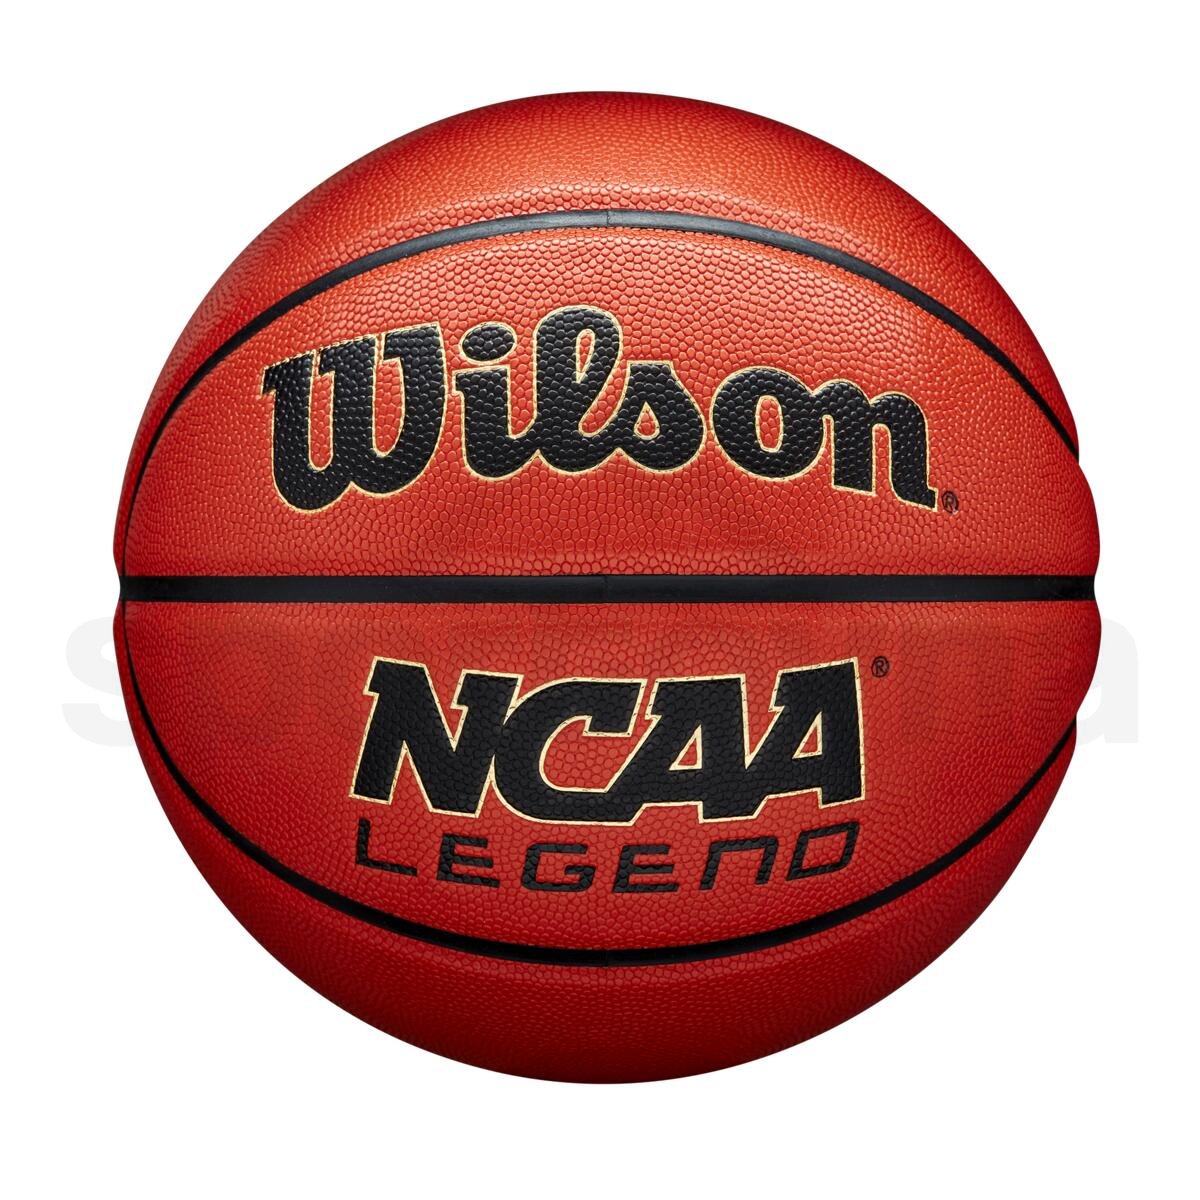 Míč Wilson NCAA Legend Bskt - oranžová